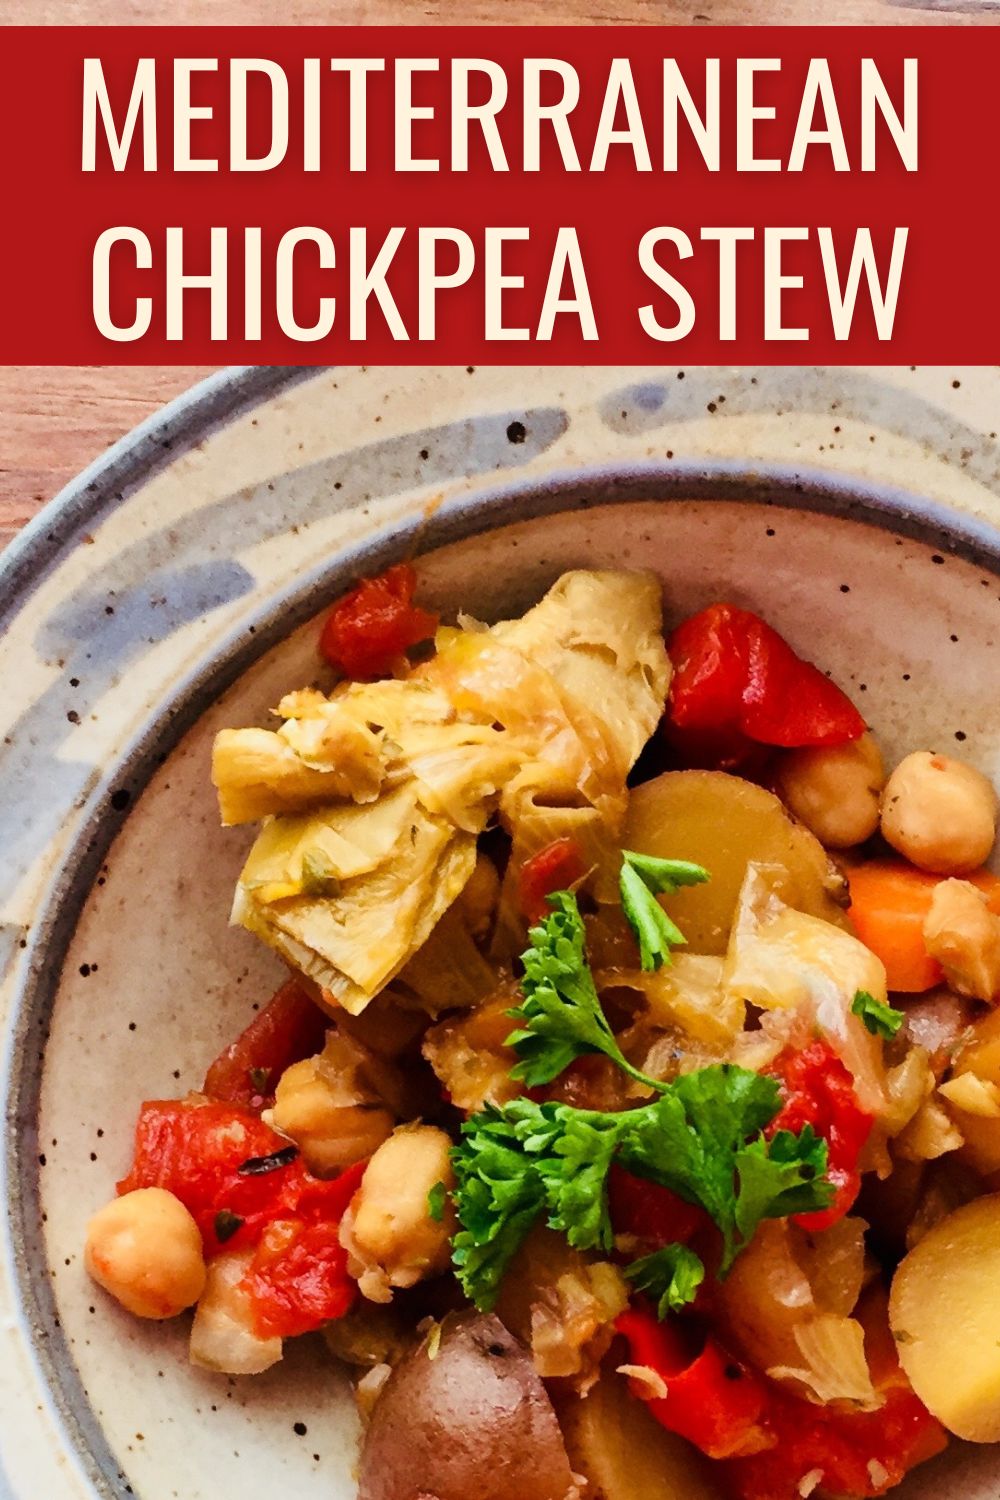 Mediterranean chickpea stew.